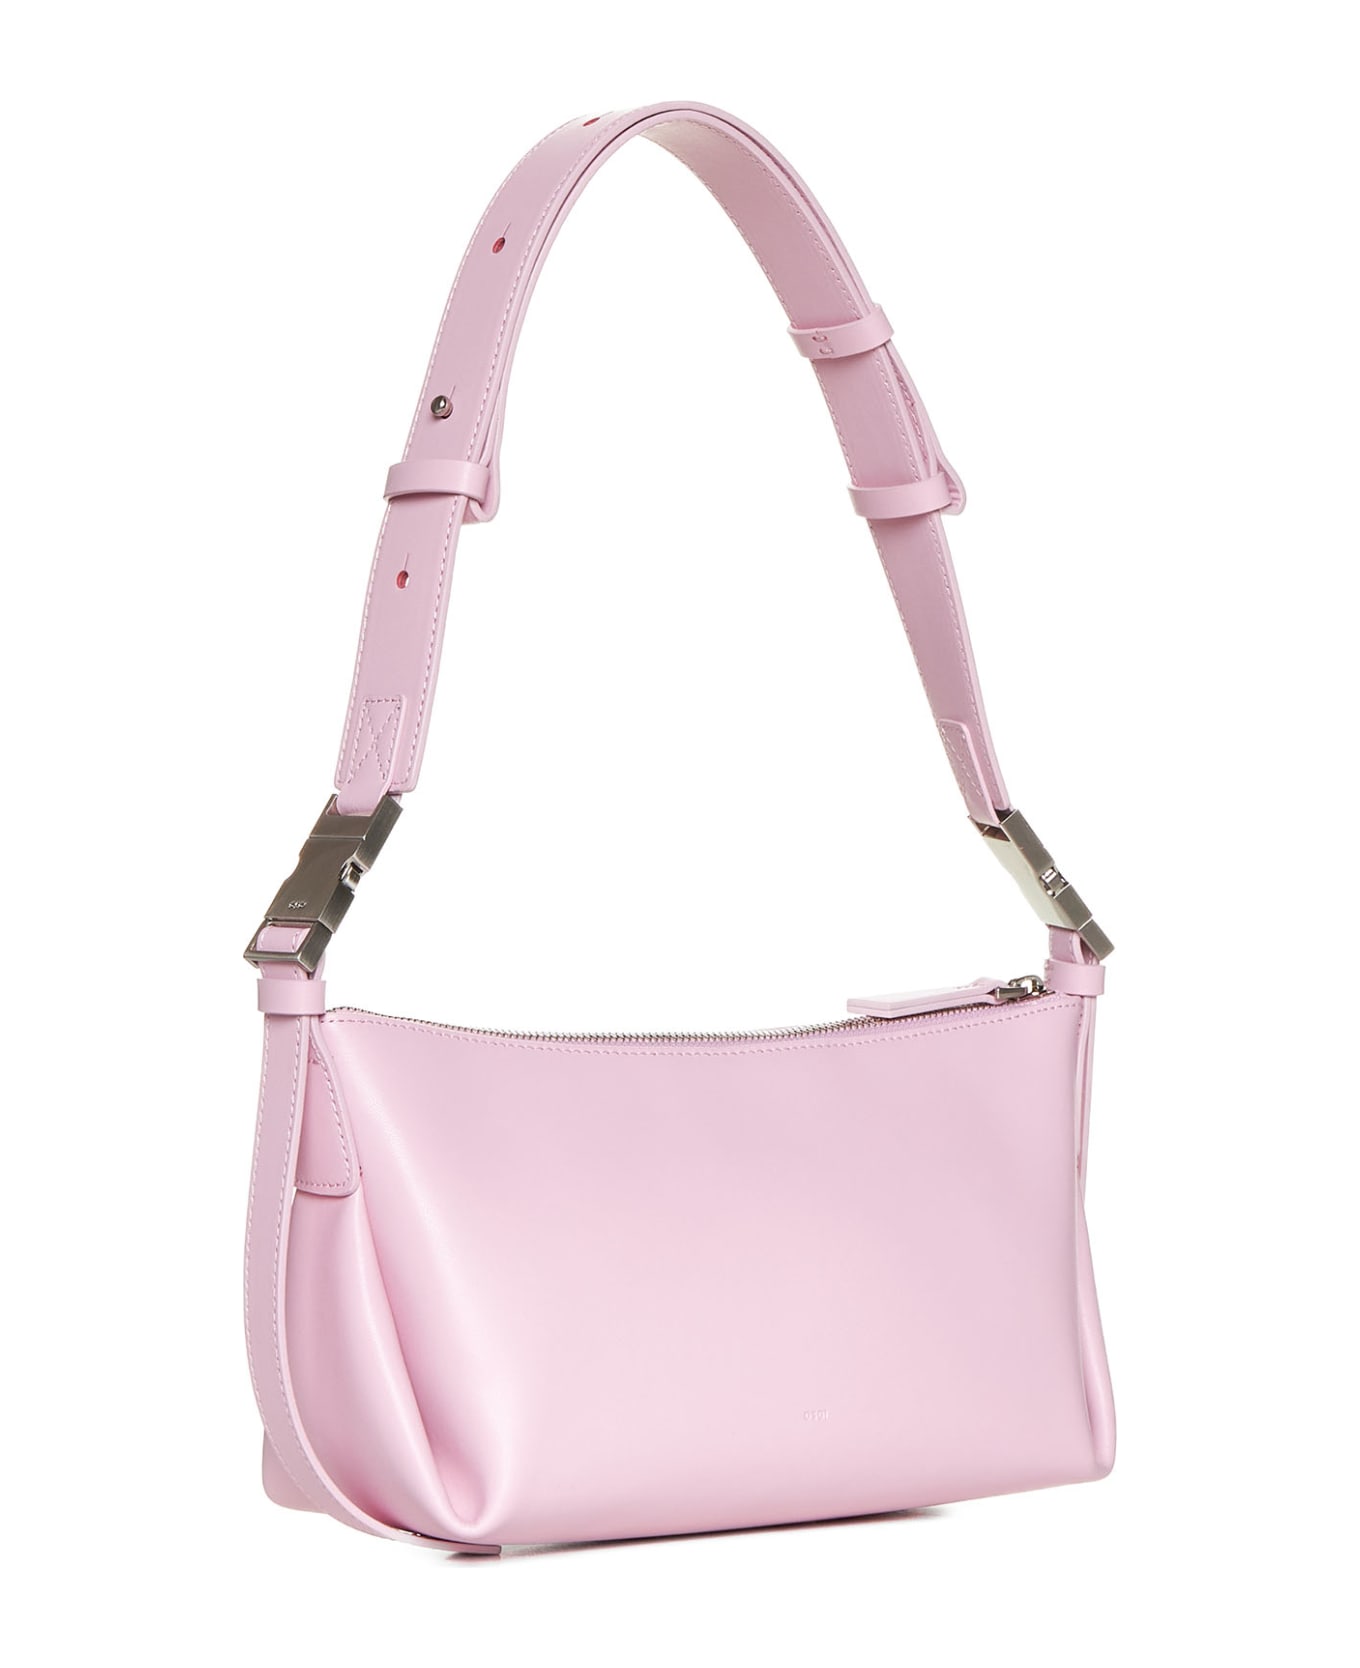 OSOI Shoulder Bag - Baby pink